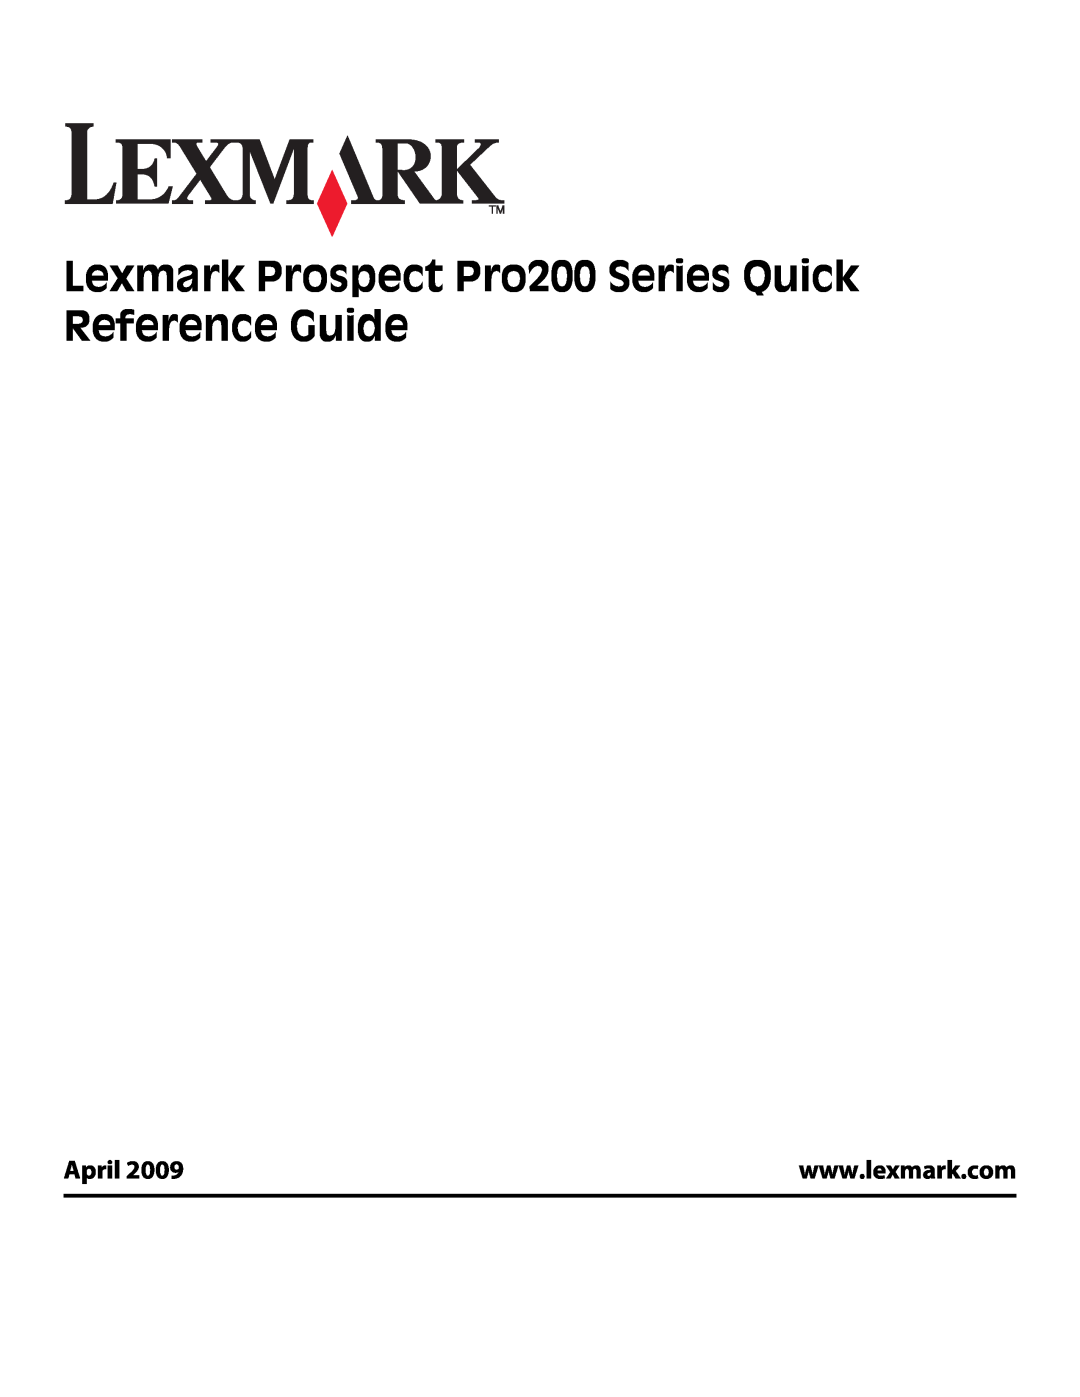 Lexmark Pro205, Pro208, Pro207 manual April 